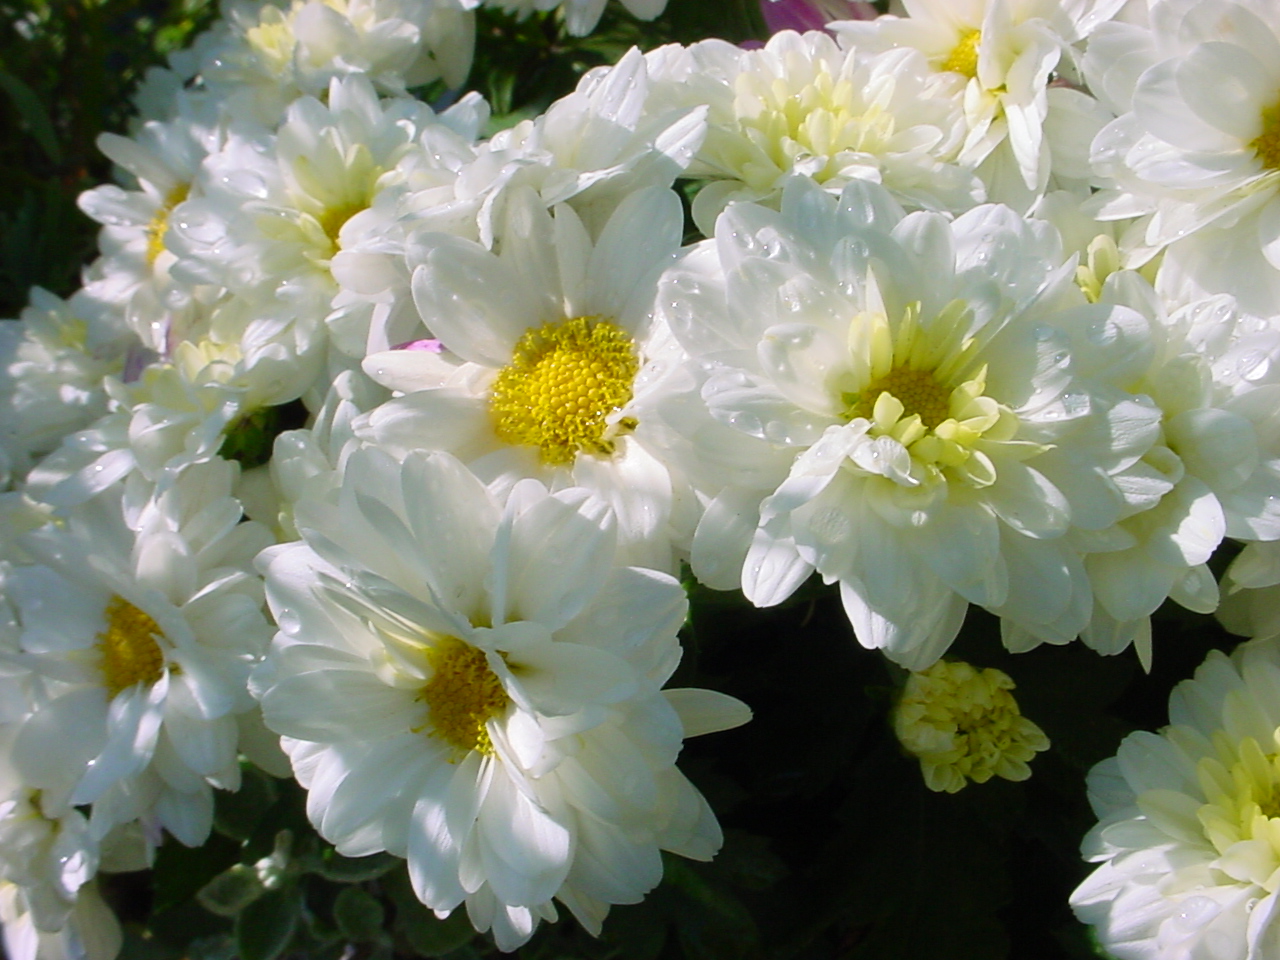 хризантема белая махровая фото